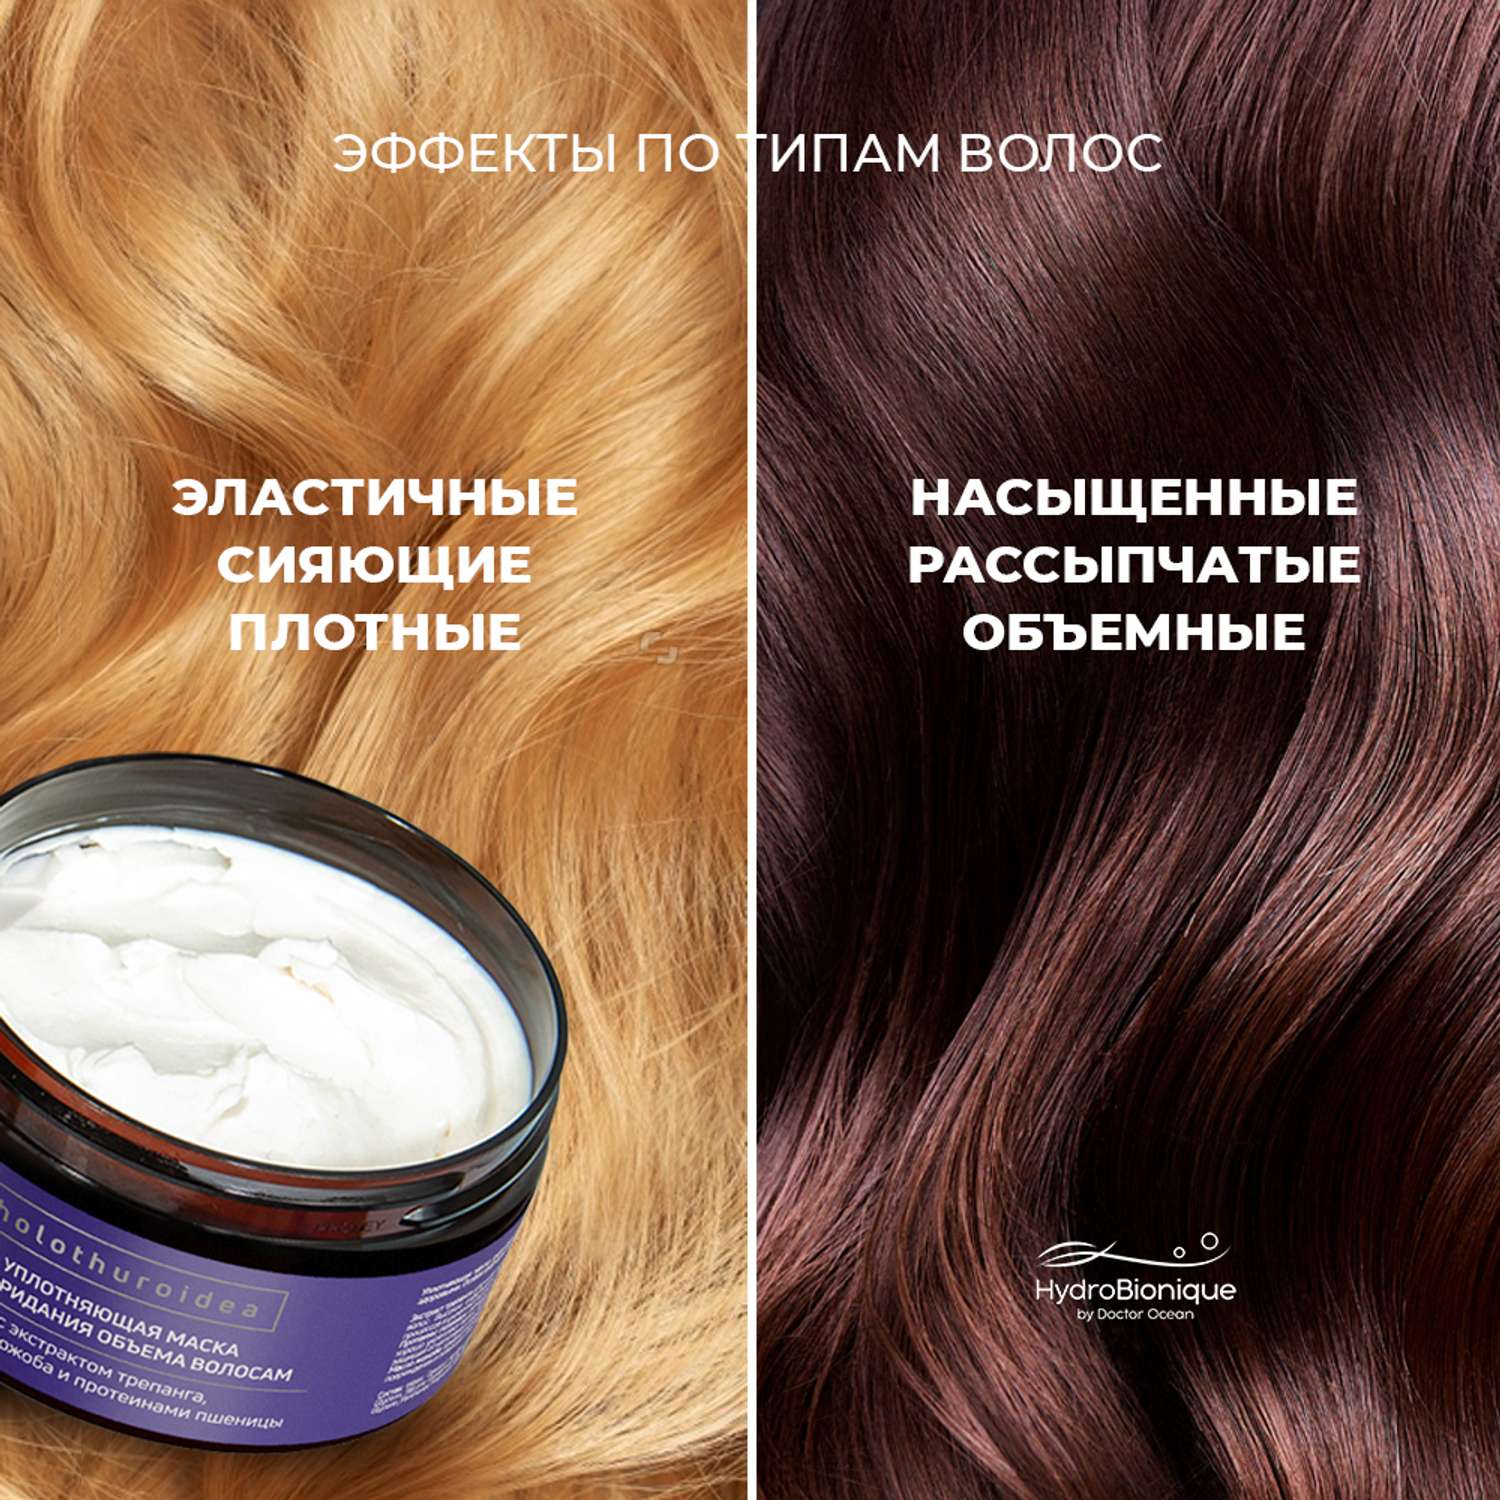 Маска для уплотнения и восстановления волос. Hydrobionique by Doctor Ocean шампунь волос фото. Маска для уплотнения волос